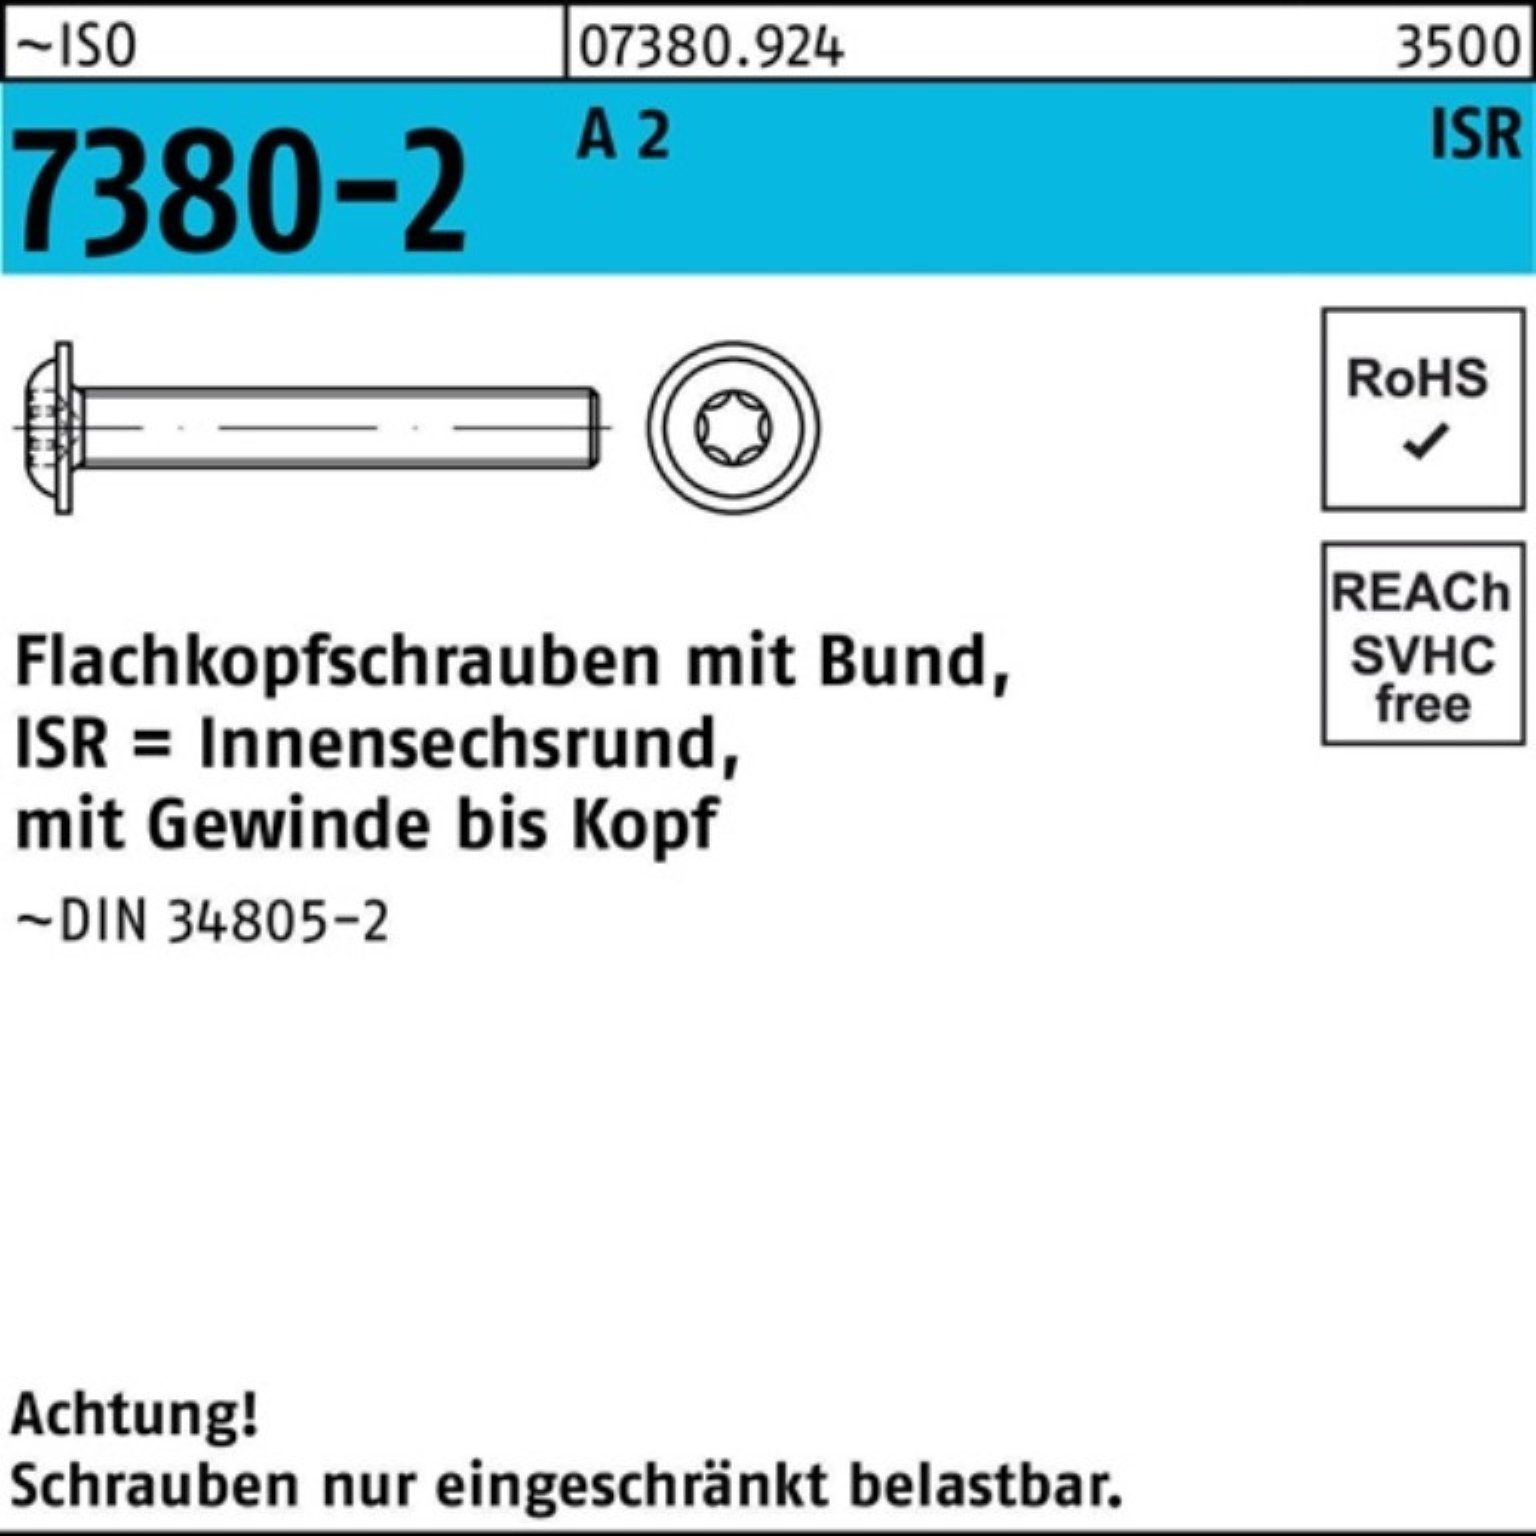 Bund/ISR 500 A 500er Flachkopfschraube 2 M5x Schraube 20-T25 Pack 7380-2 ISO VG Reyher